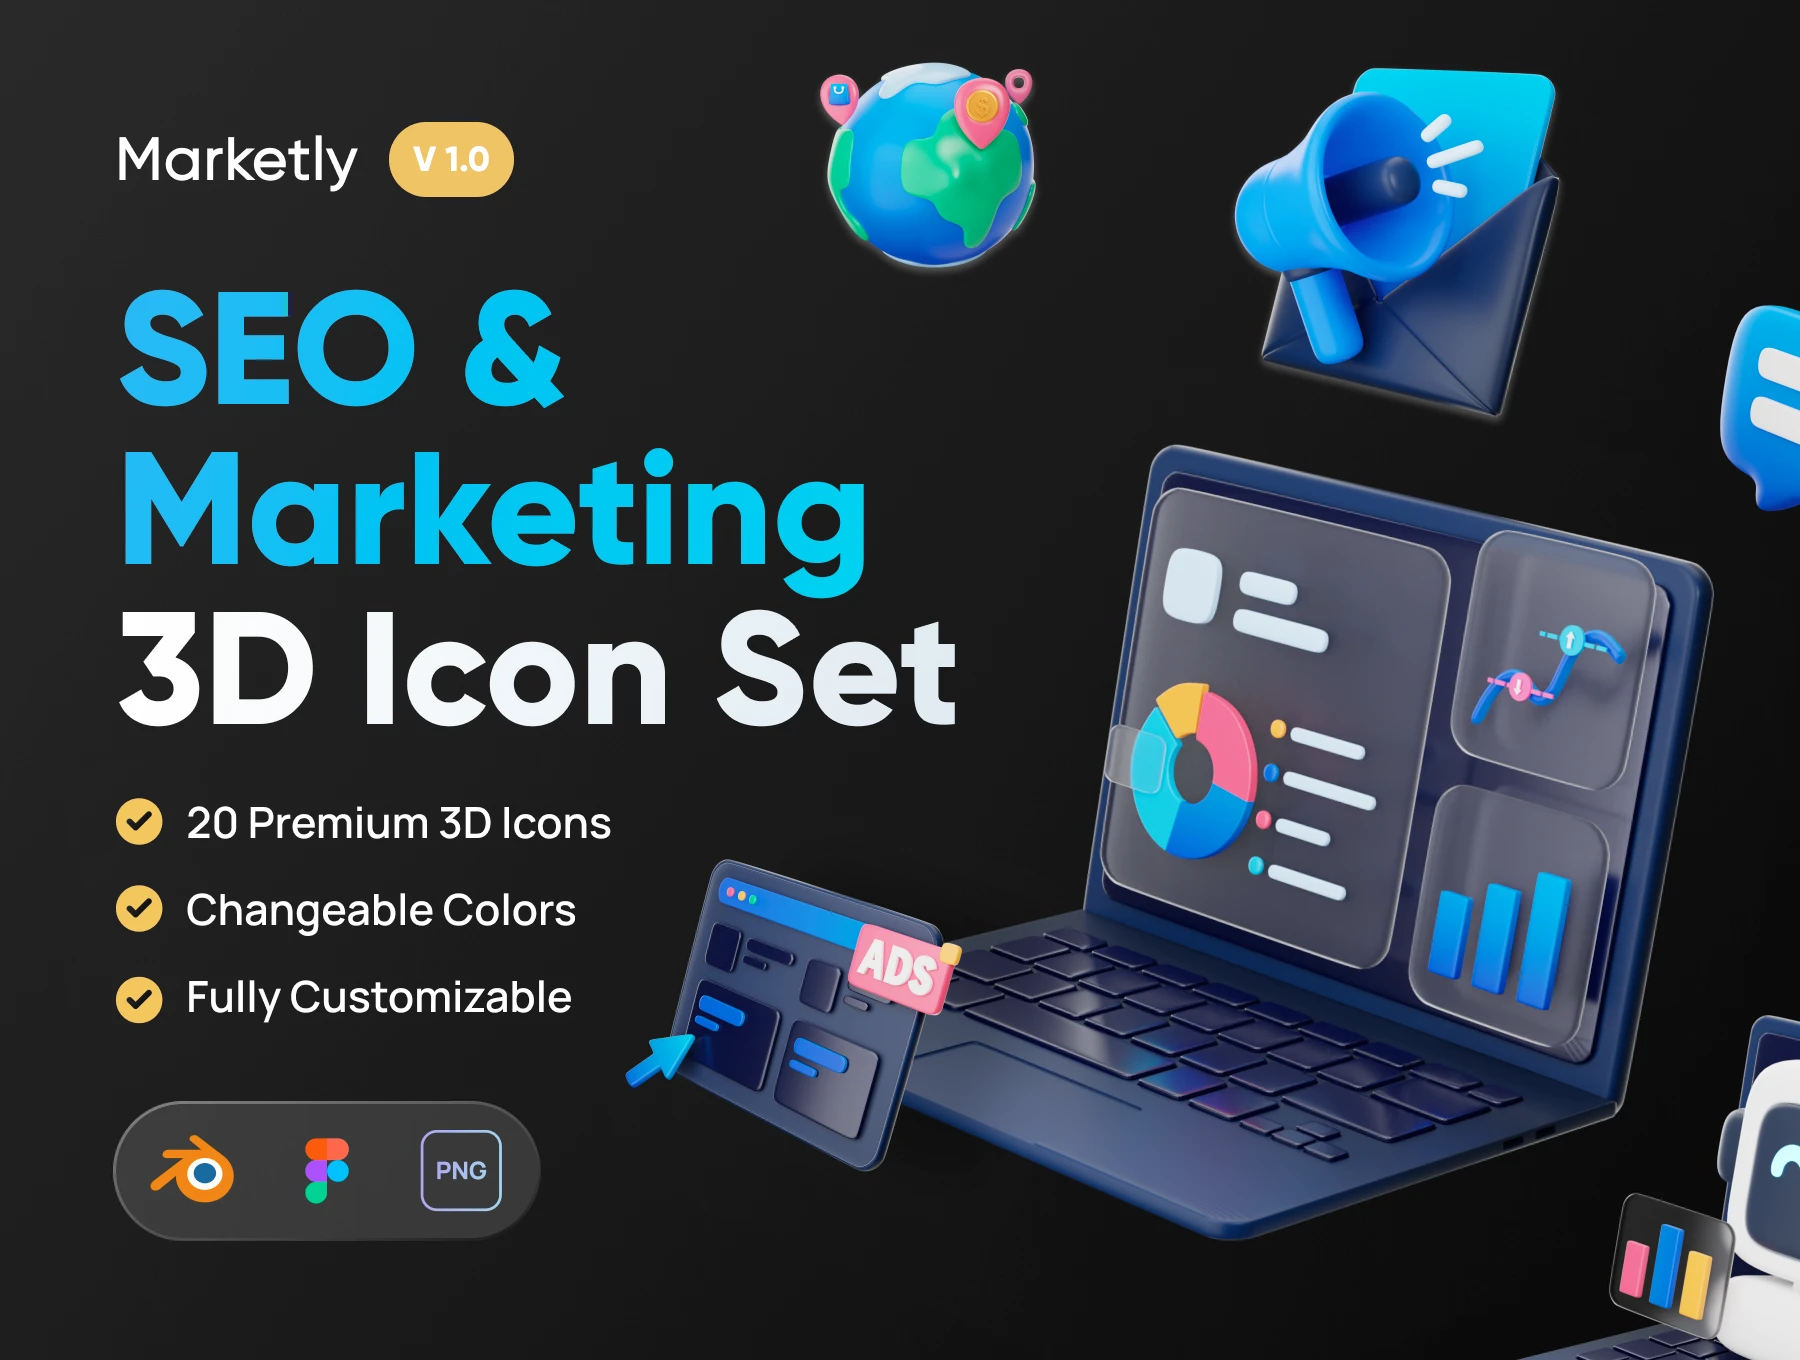 [VIP] Marketly: SEO & Marketing 3D Icon Set